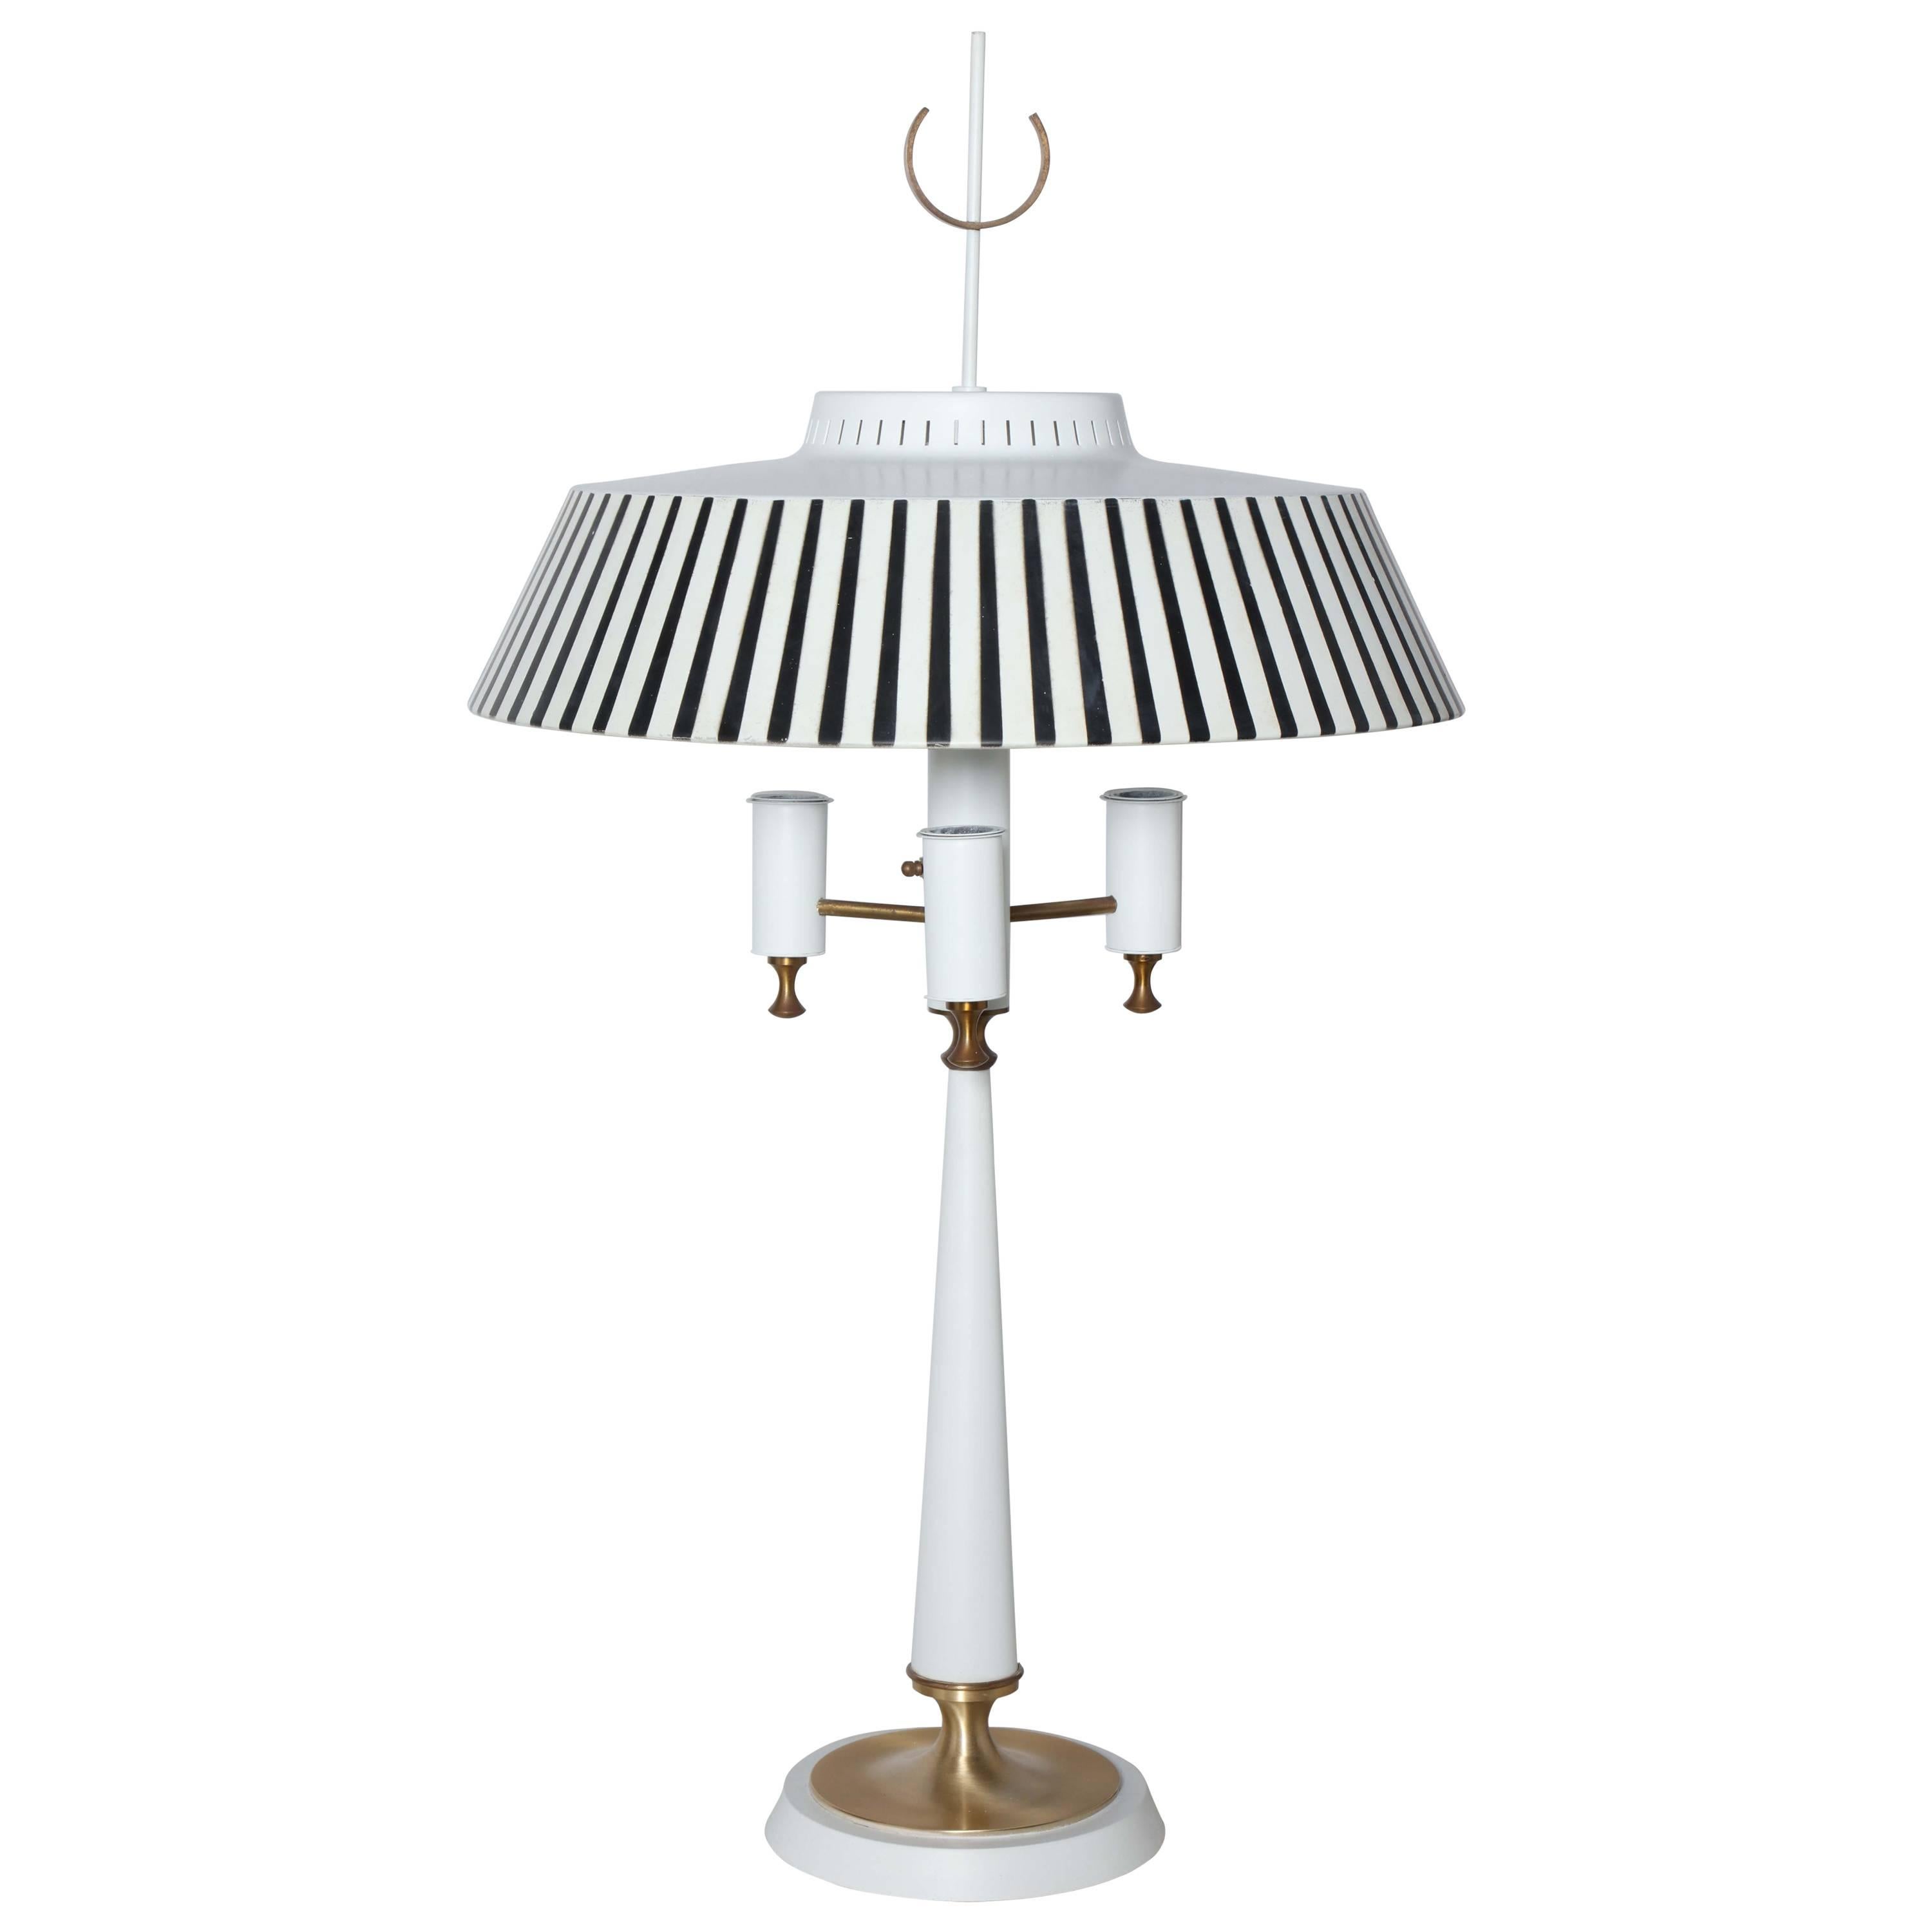 Lampe chandelier blanc Gerald Thurston avec abat-jour en métal à rayures noires et blanches